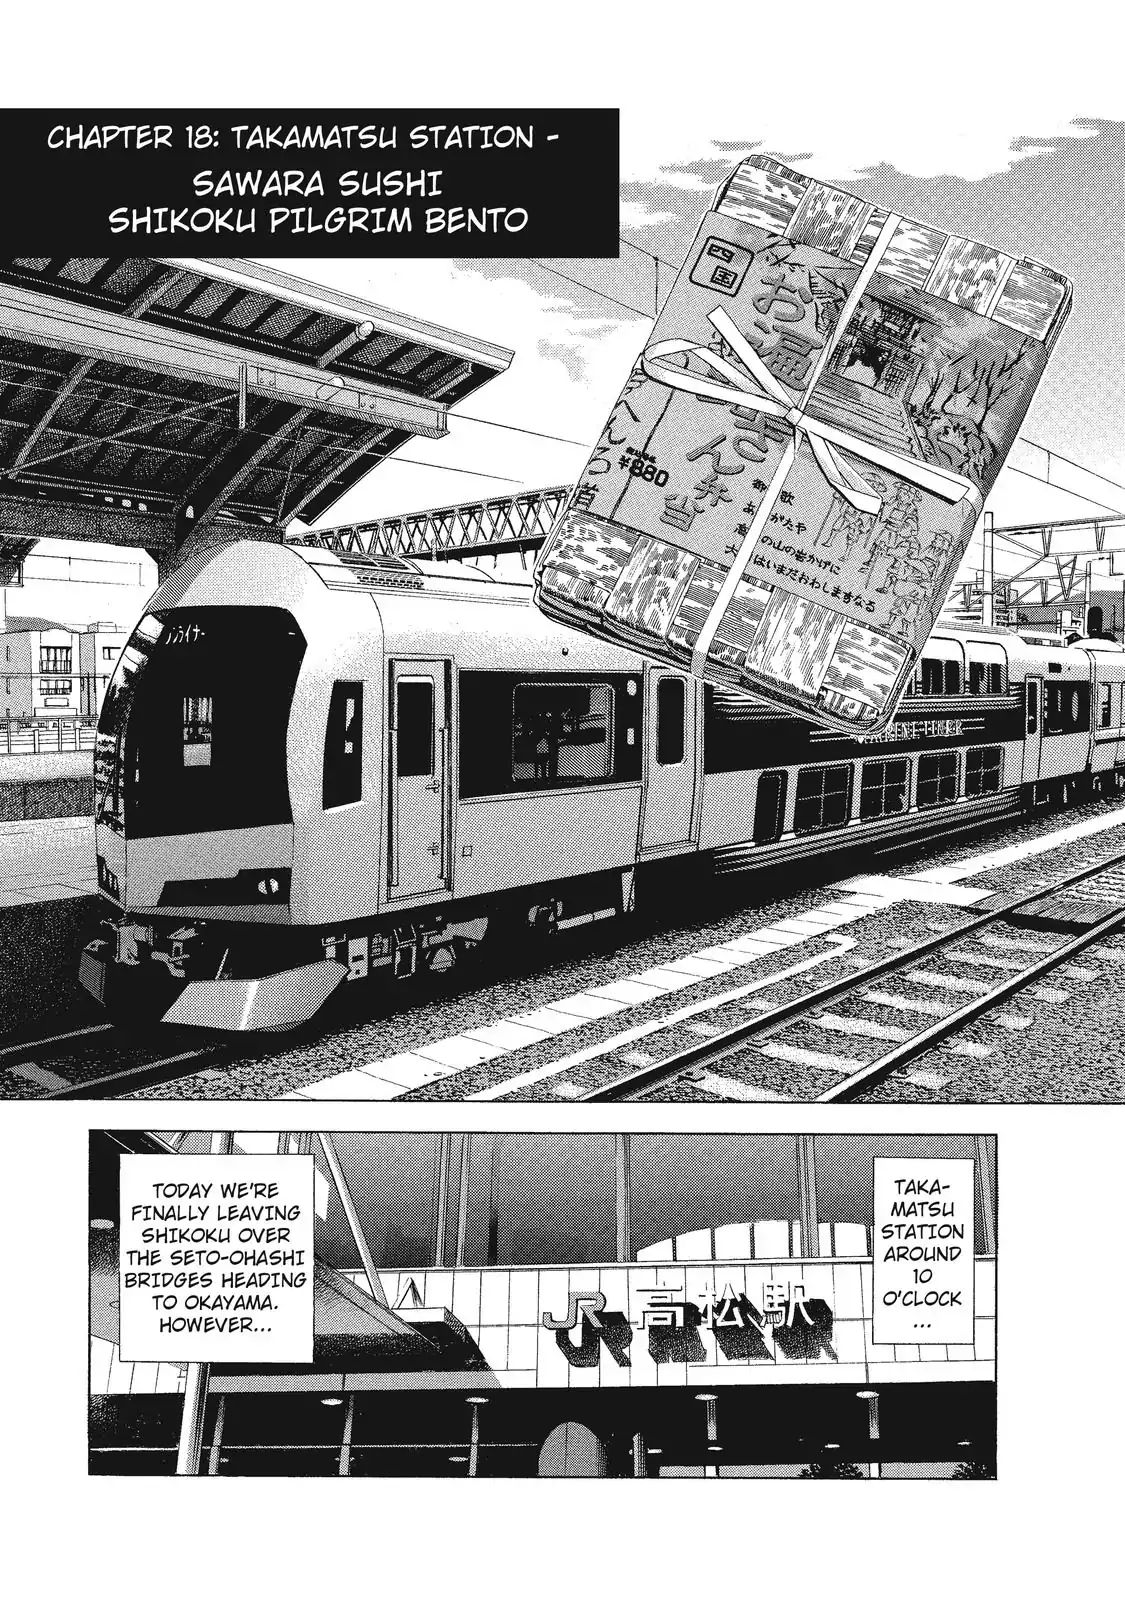 Ekiben Hitoritabi Vol.2 Chapter 18: Takamatsu Station - Sawara Sushi Shikoru Pilgrim Bento